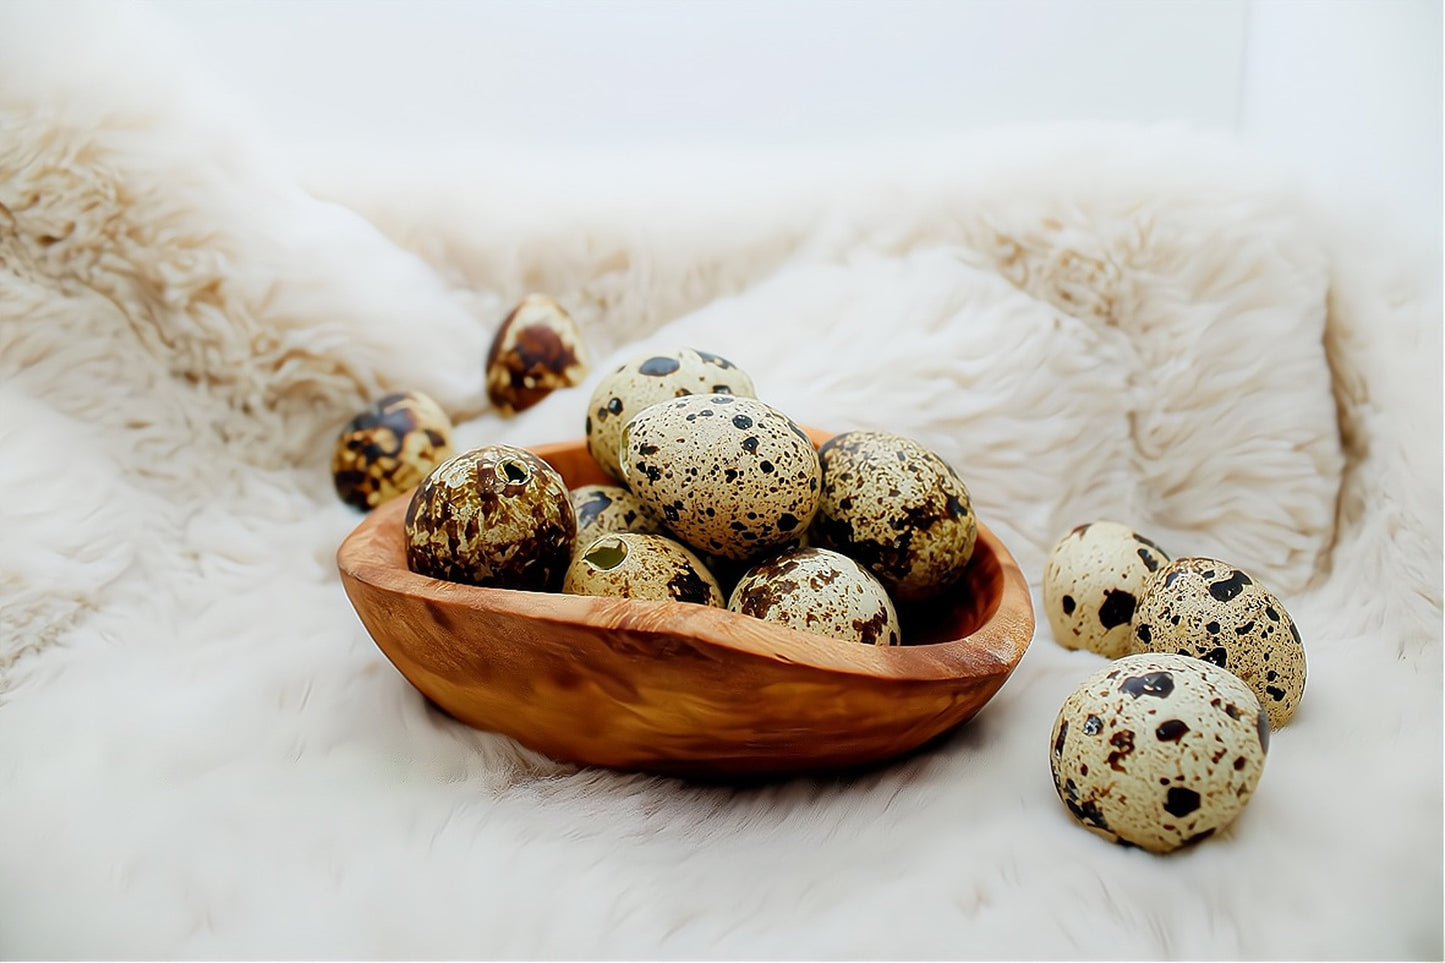 Osterdeko Holz - natürliche Olivenholzschale mit Eiern mit echten Wachteleiern oder Dekoeiern